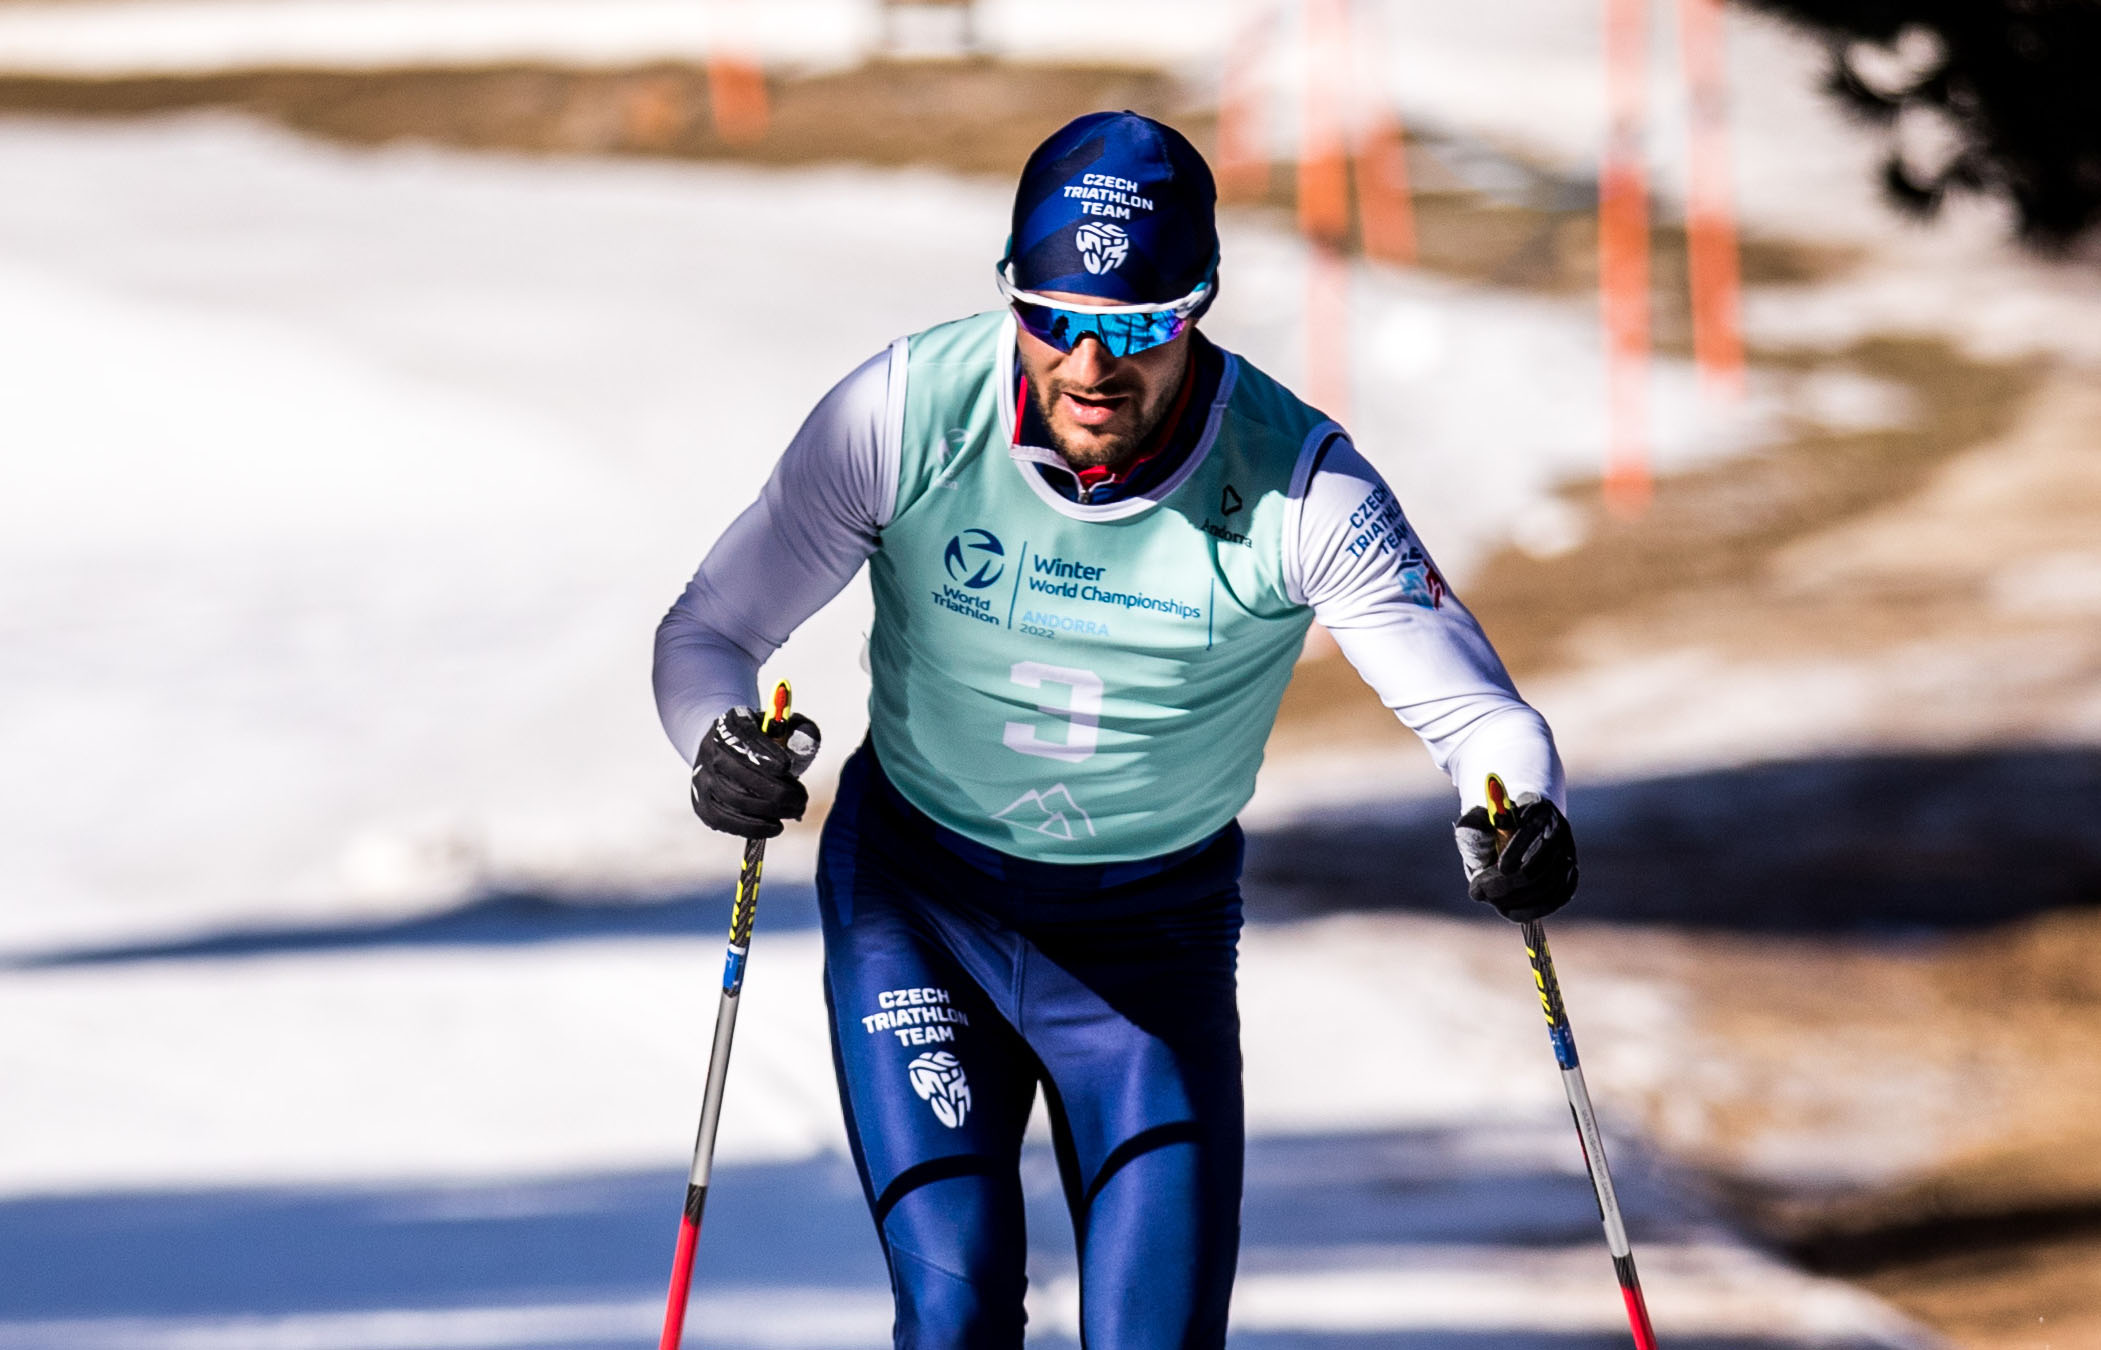 Stříbro! Marek Rauchfuss veze další medaili z mistrovství Evropy v zimním triatlonu